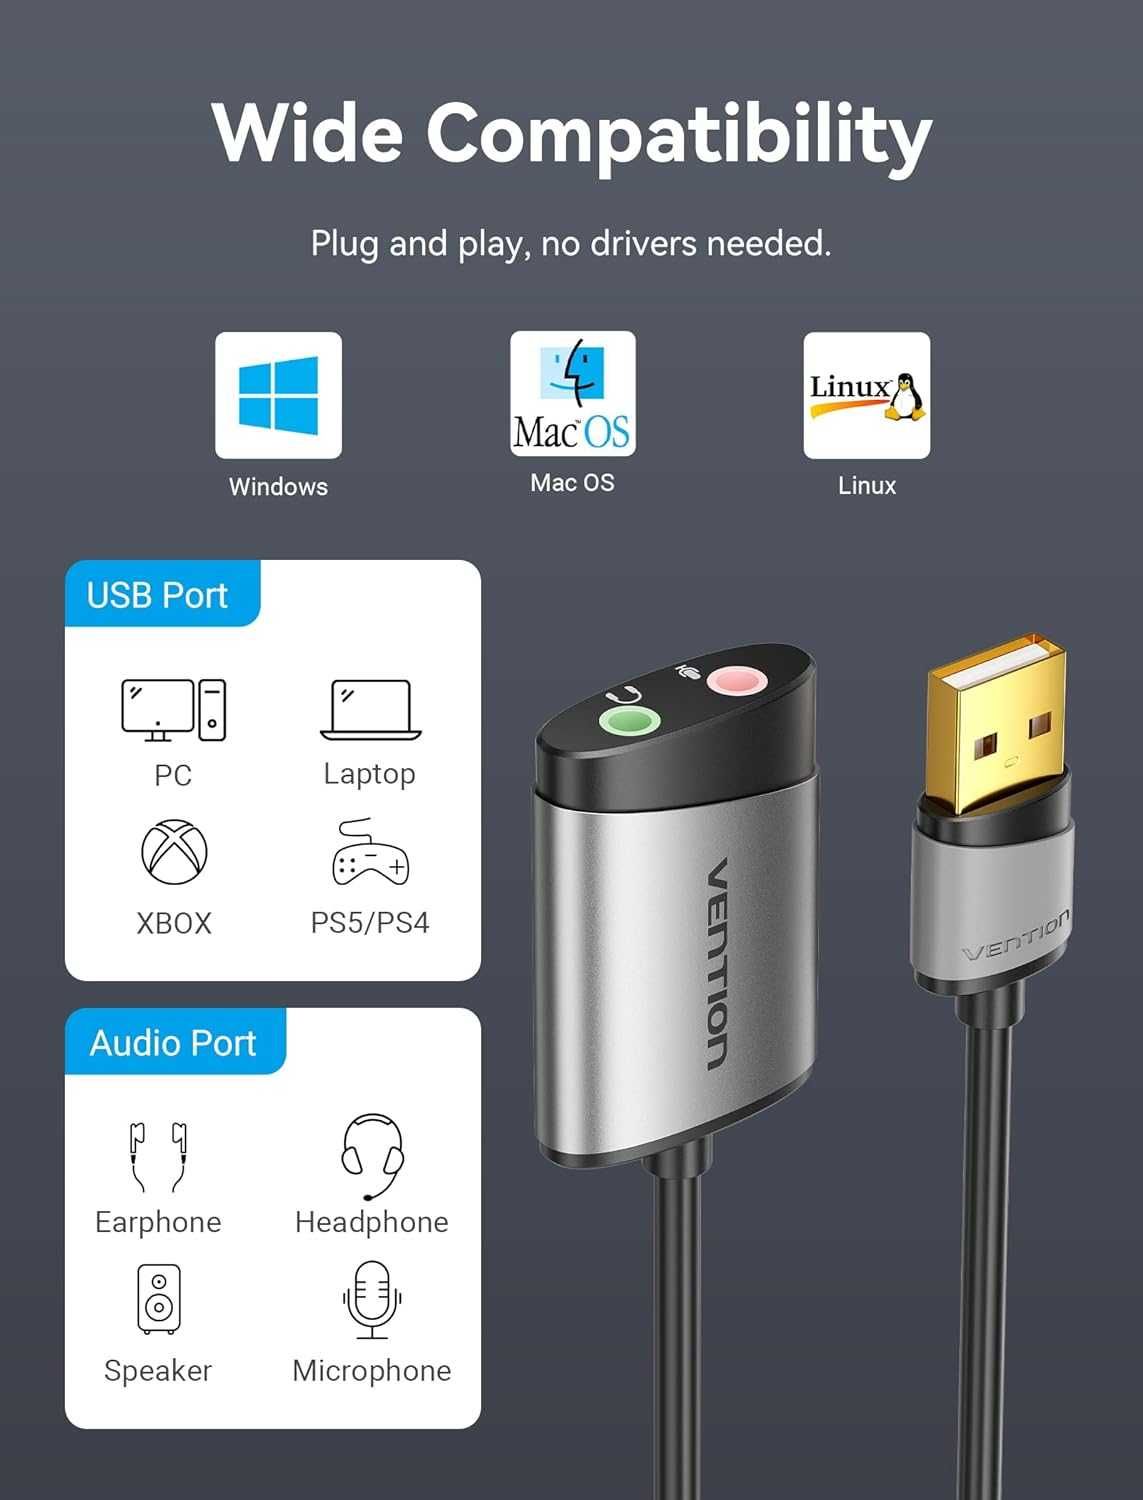 Karta dźwiękowa zewnętrzna Vention USB na gniazdo 3,5 mm adapter audio